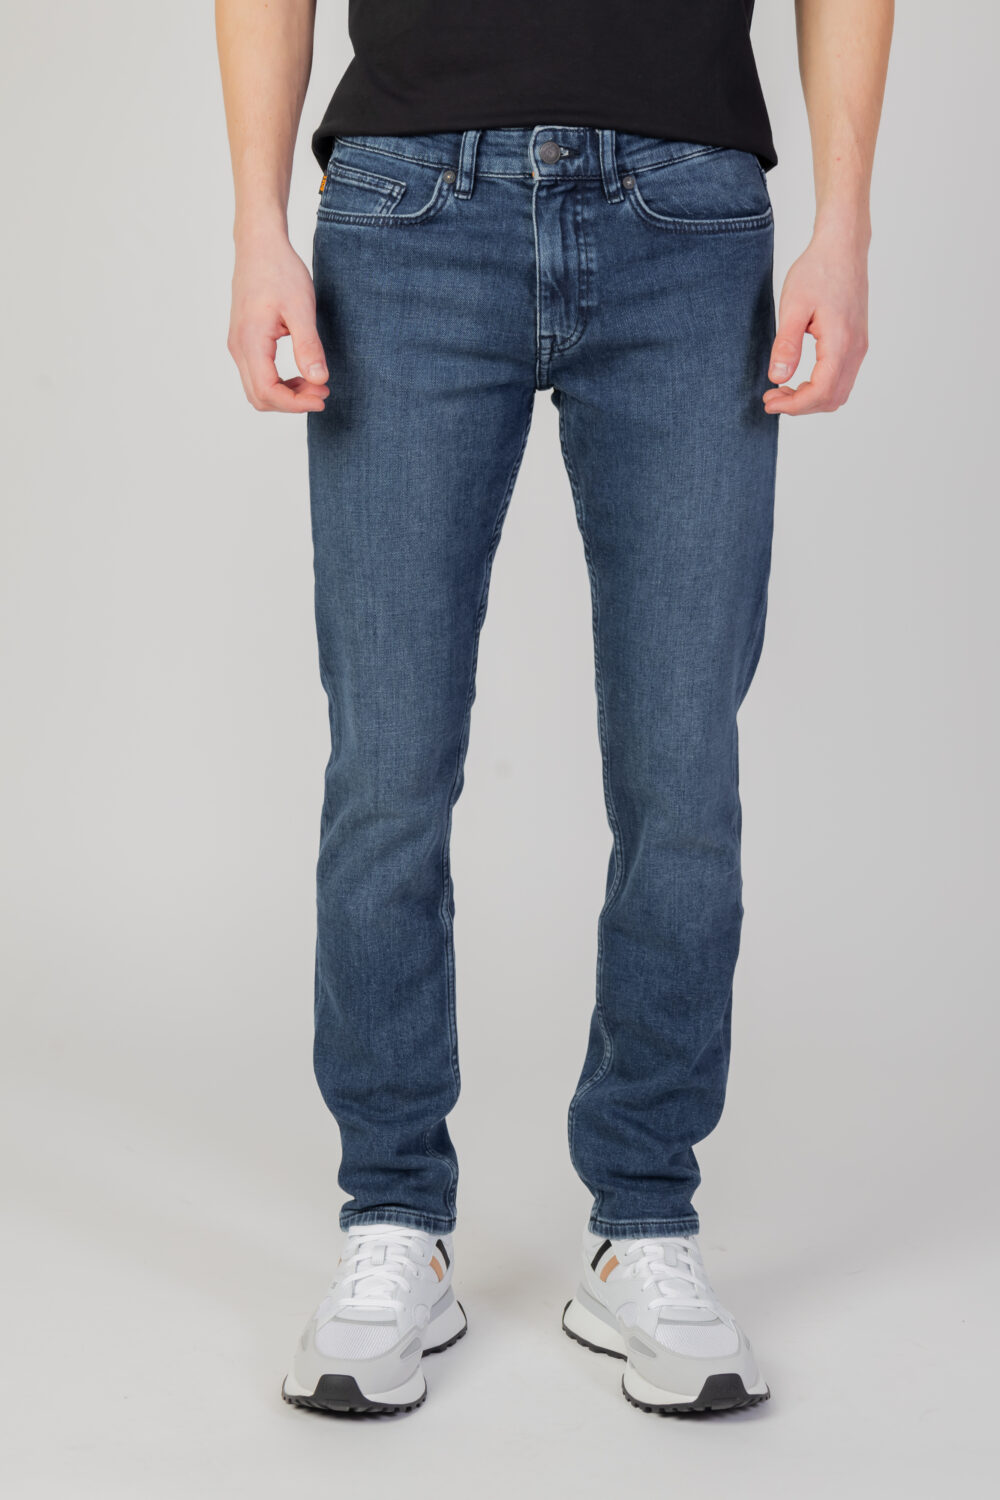 Jeans slim Boss delaware bc-c Denim - Foto 6